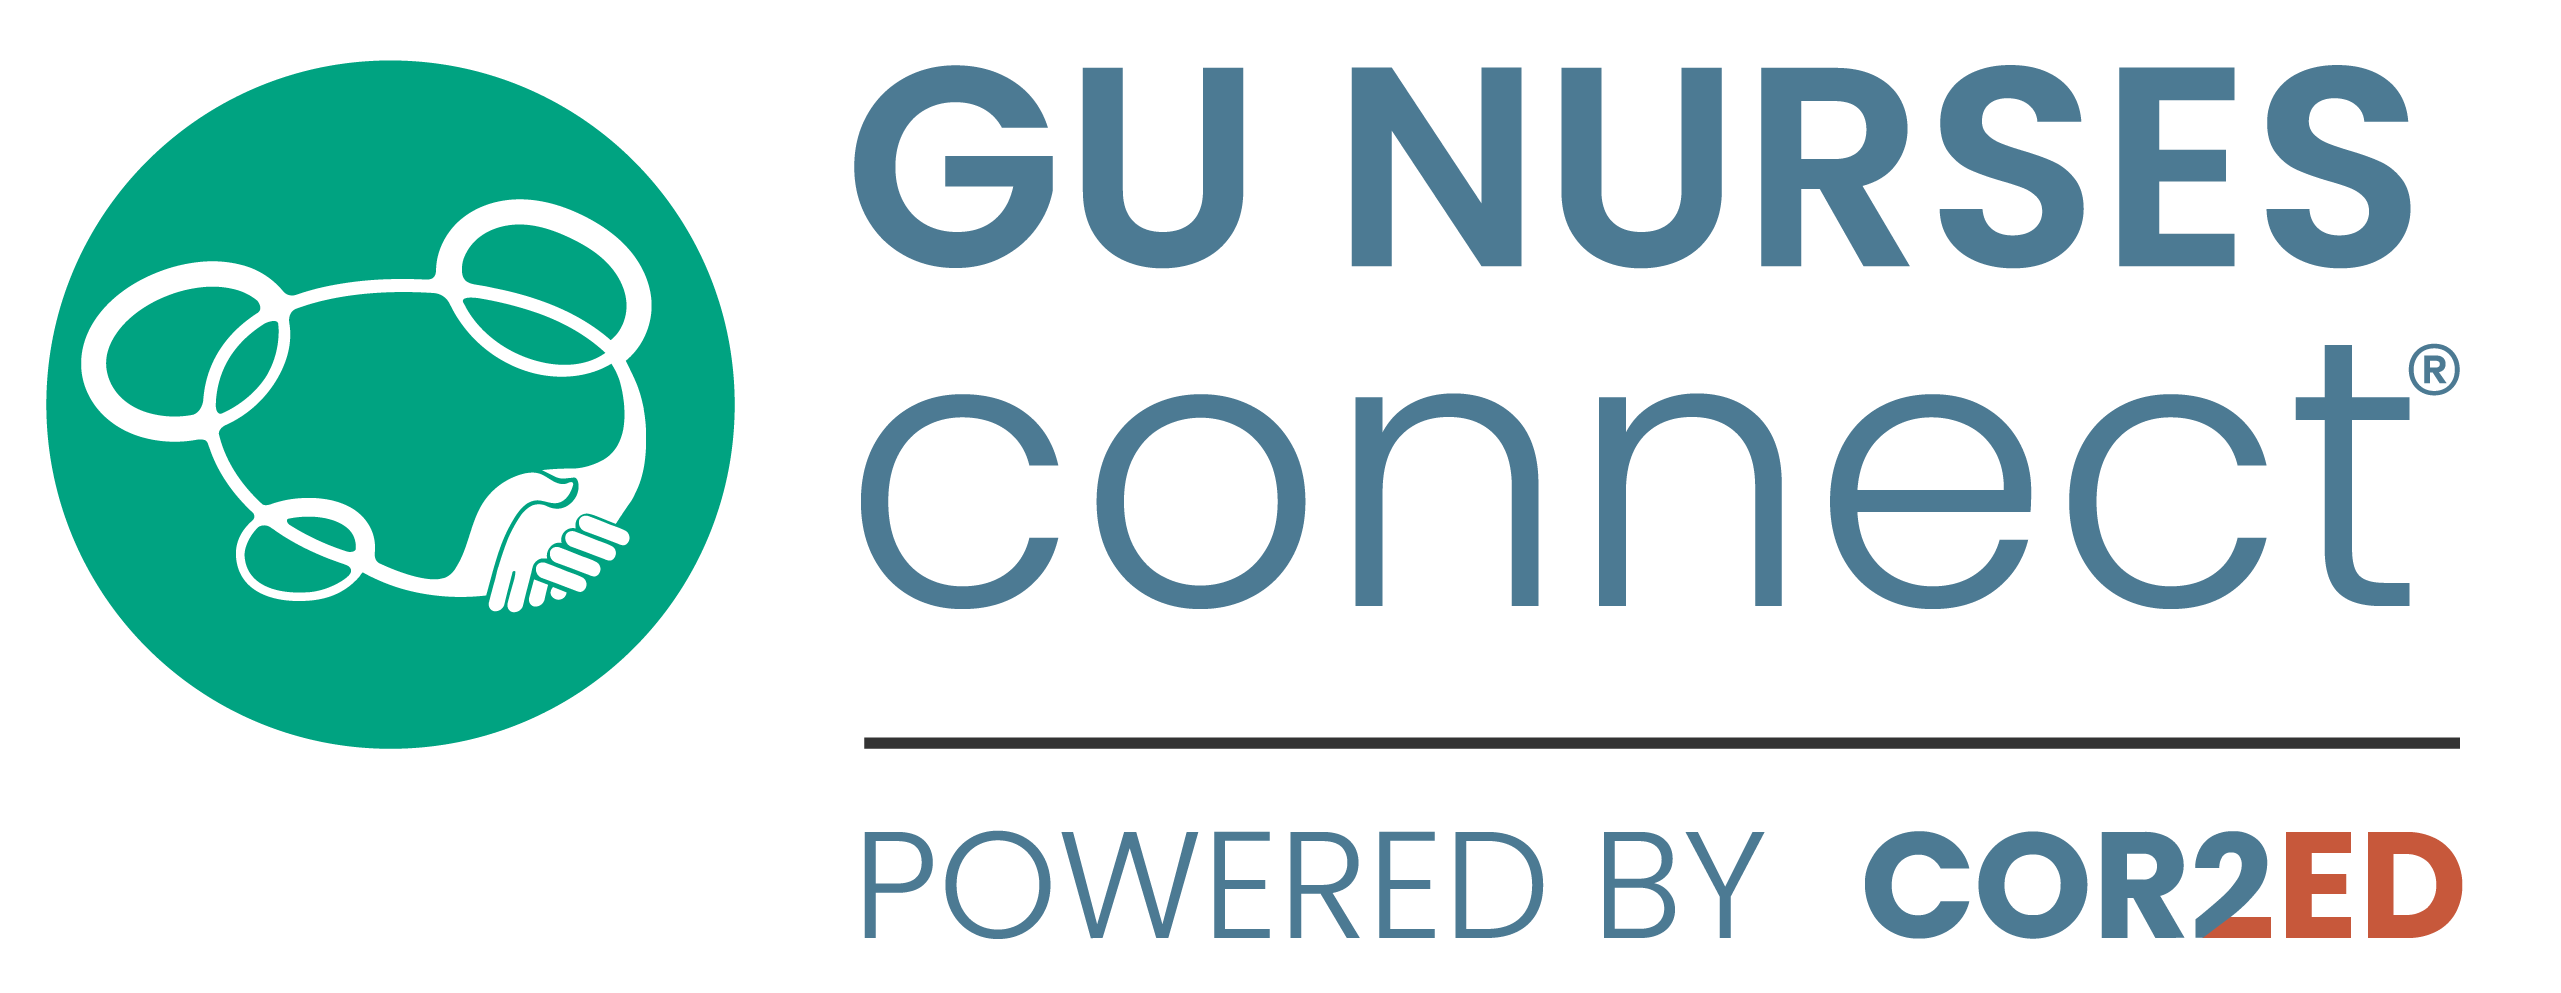 GU NURSES CONNECT